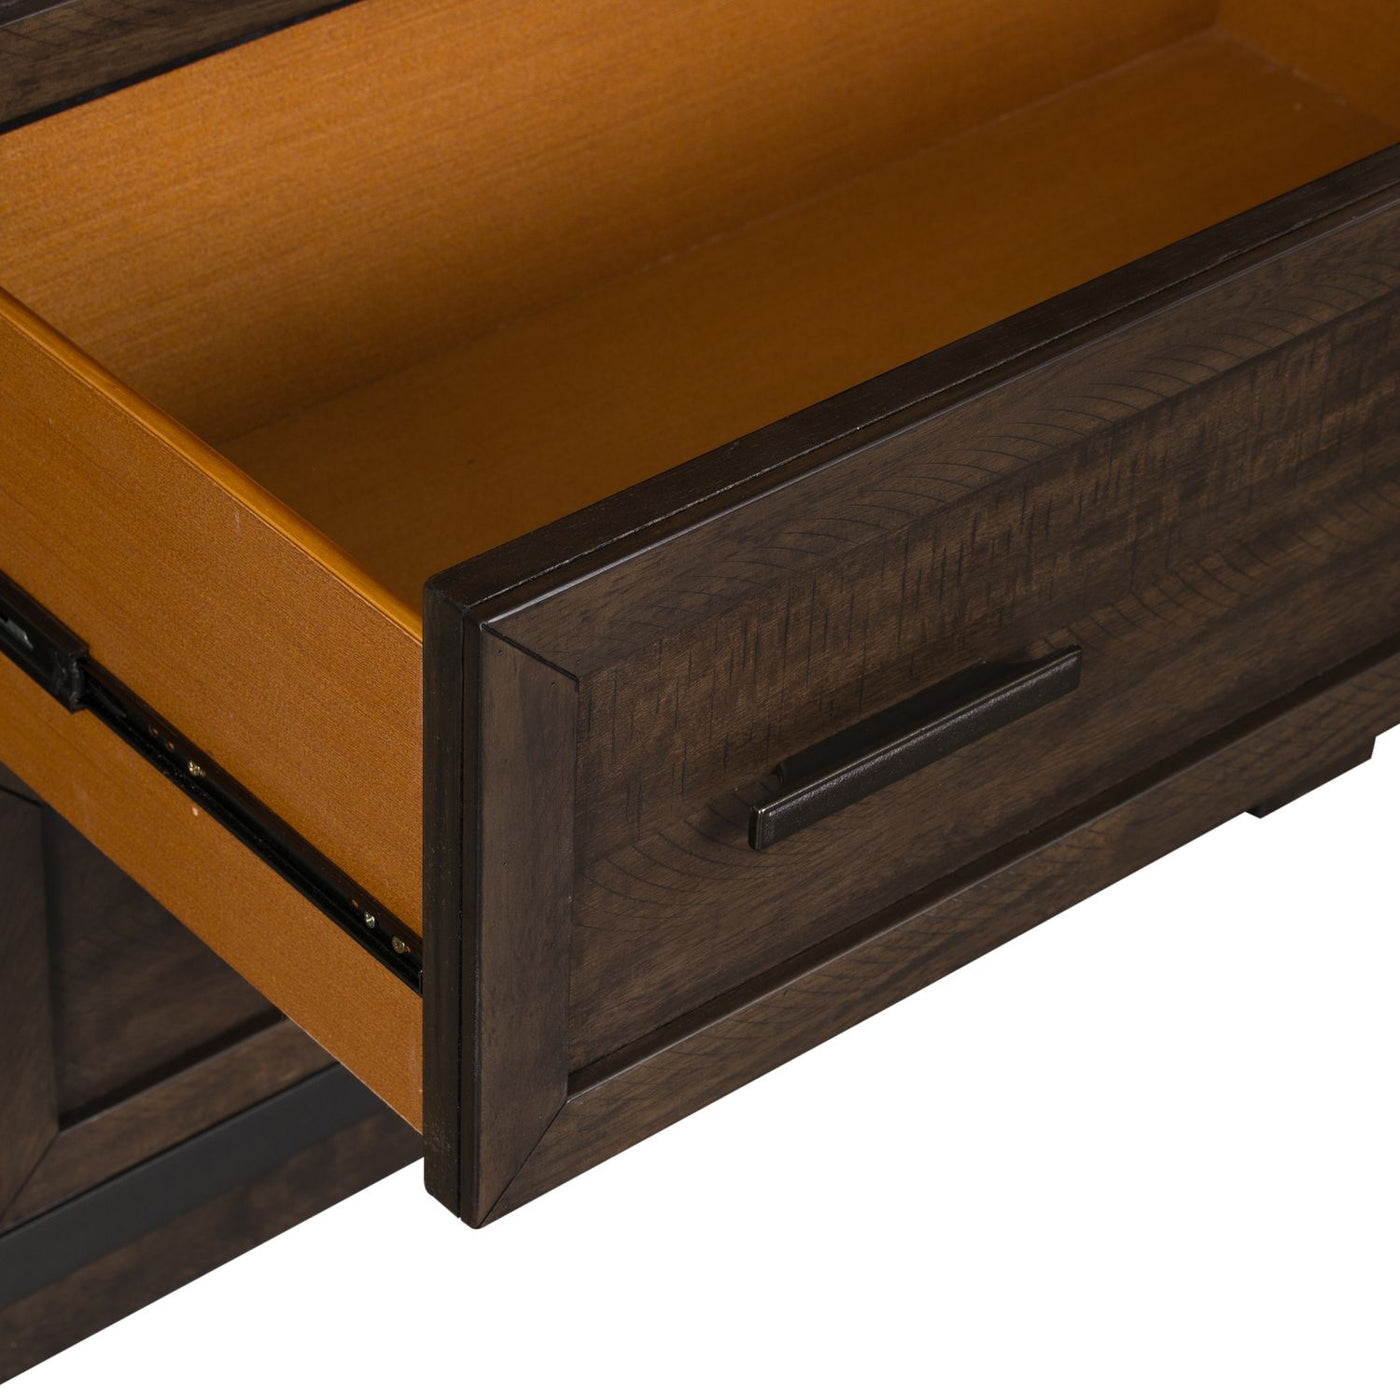 Warewood 5 Drawer Chest-Storage Chests-Jennifer Furniture